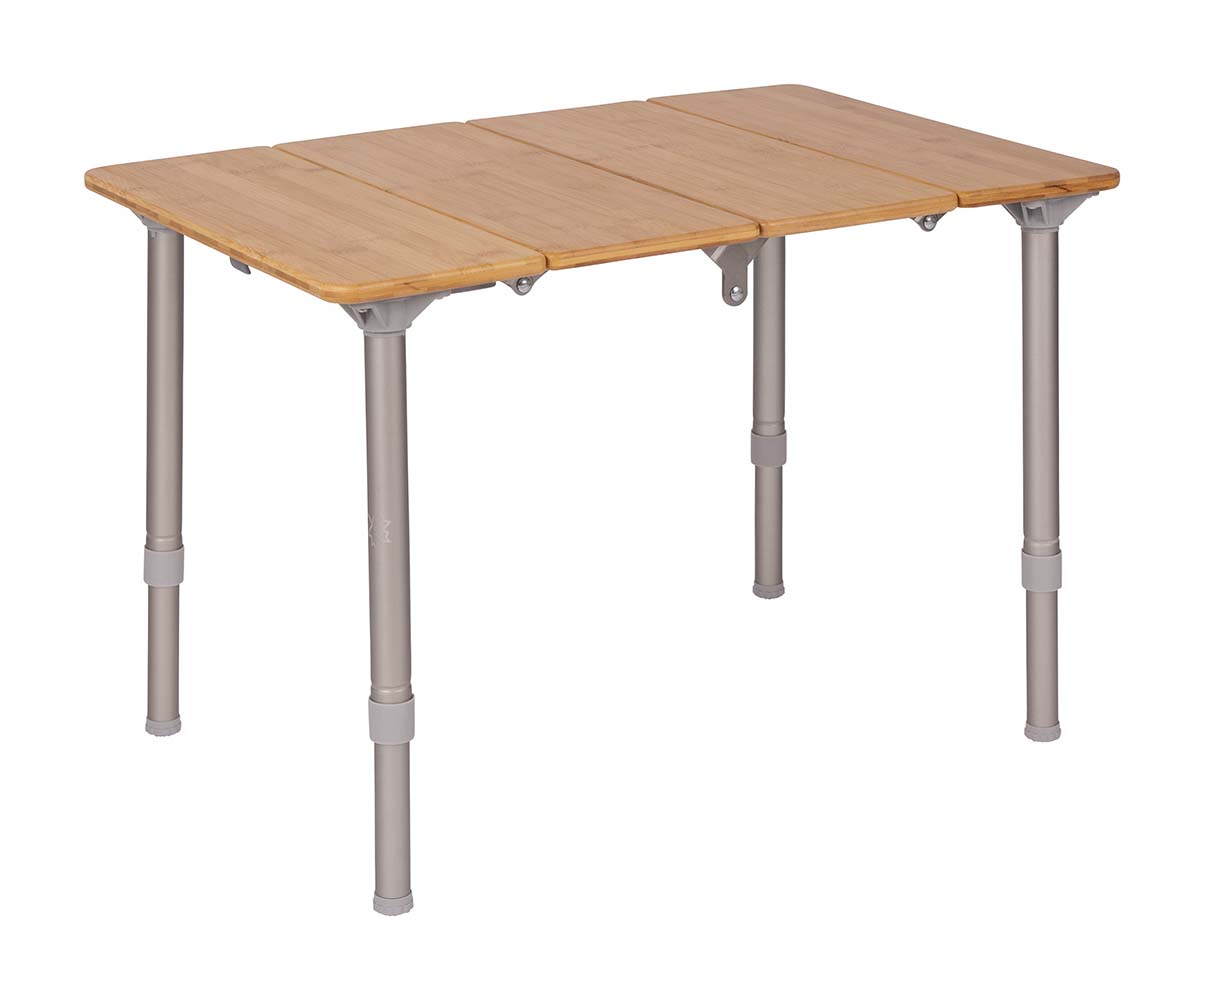 1404644 Een zeer luxe en stijlvolle tafel. Deze watervaste tafel beschikt over een zeer stevig aluminium frame met een dik bamboe tafelblad. Heeft inklapbare poten en een deelbaar lamellen tafelblad. Door de 4 lamellen van de tafel op te vouwen is de tafel compact in te klappen en te vervoeren. De Air-Craft aluminium tafelpoten zijn in hoogte verstelbaar. Binnen enkele seconden op te zetten. Wordt geleverd in een handige draagtas.